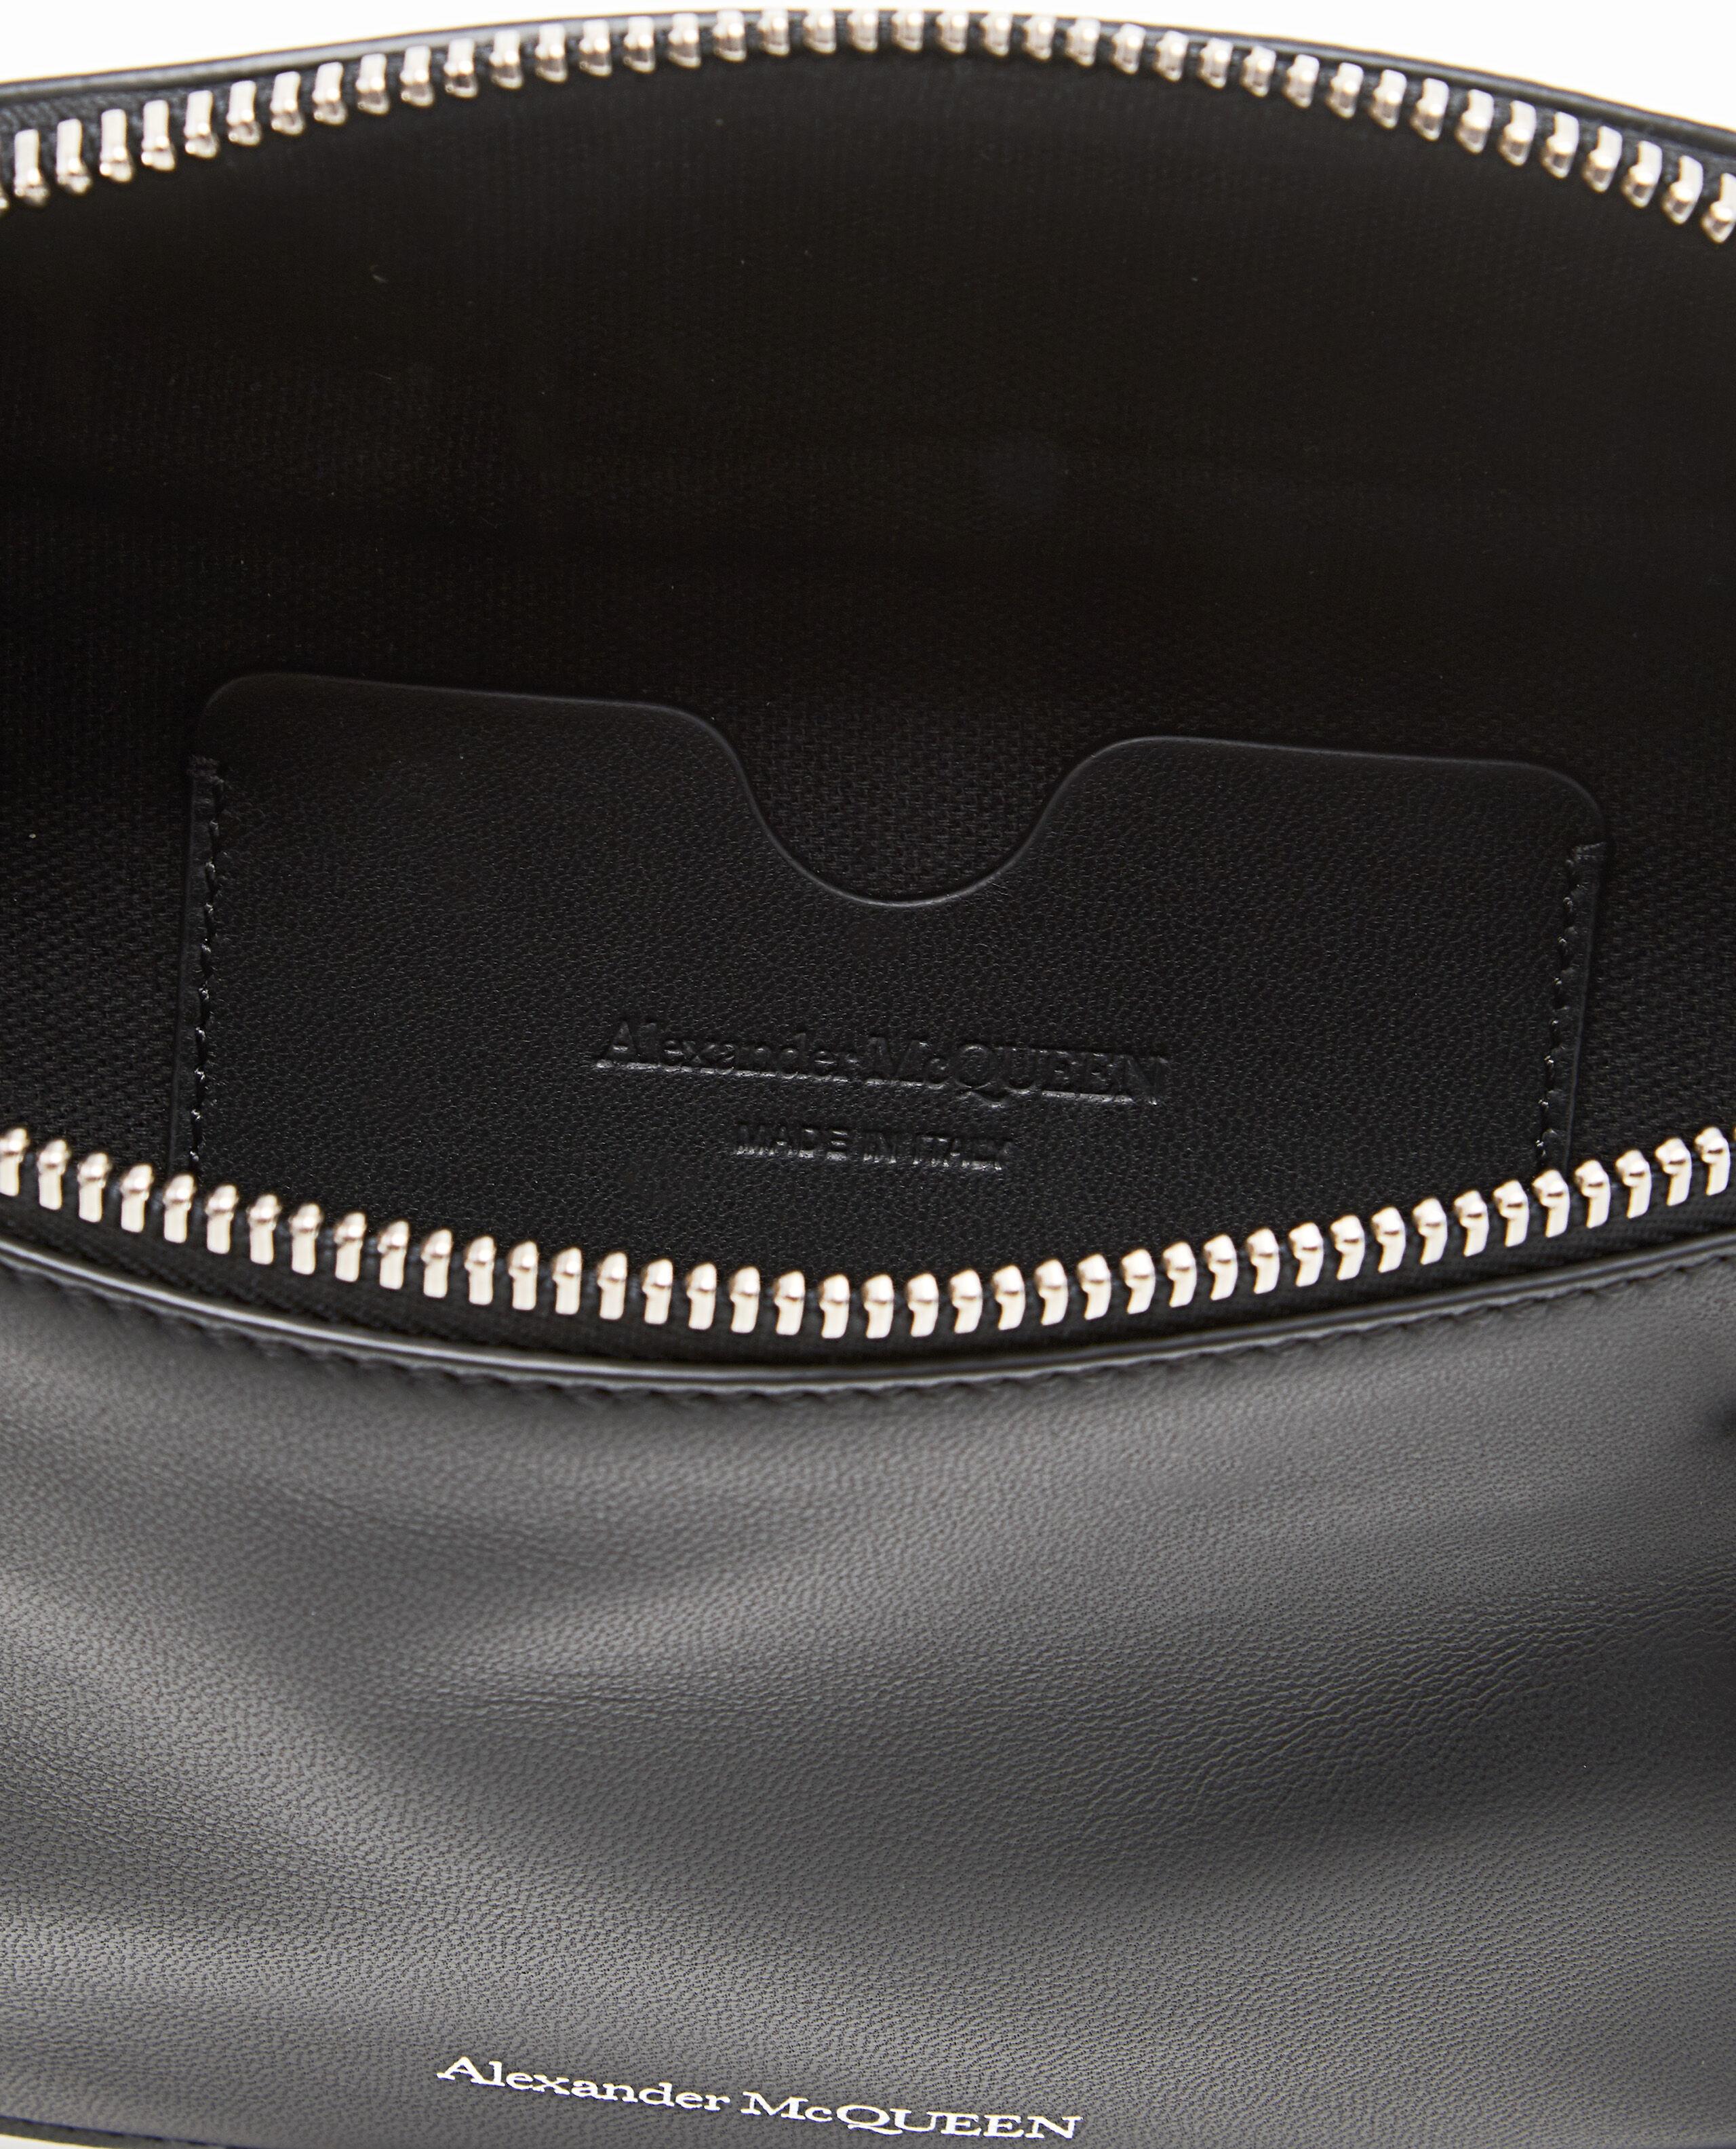 Alexander McQueen Harness Waist Bag in Black for Men - Lyst